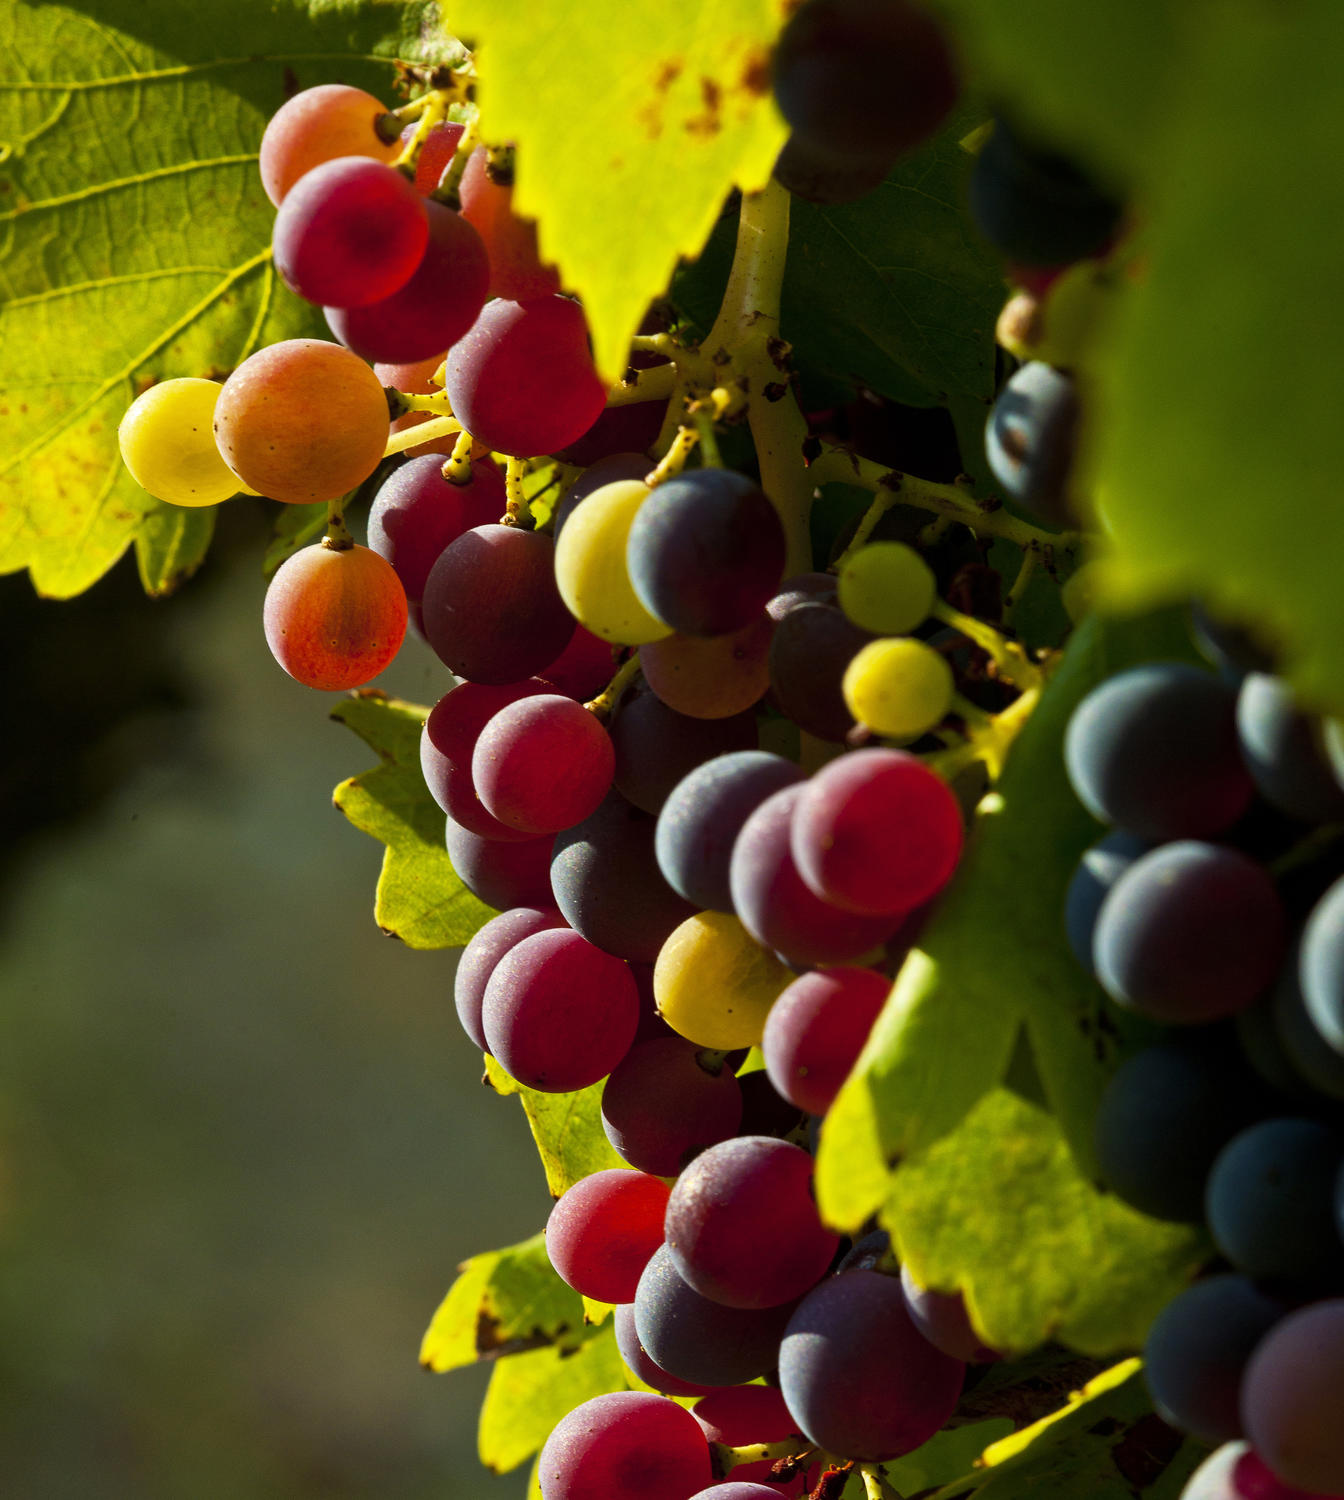 Gestion parcellaire - Respect de la maturité des raisins